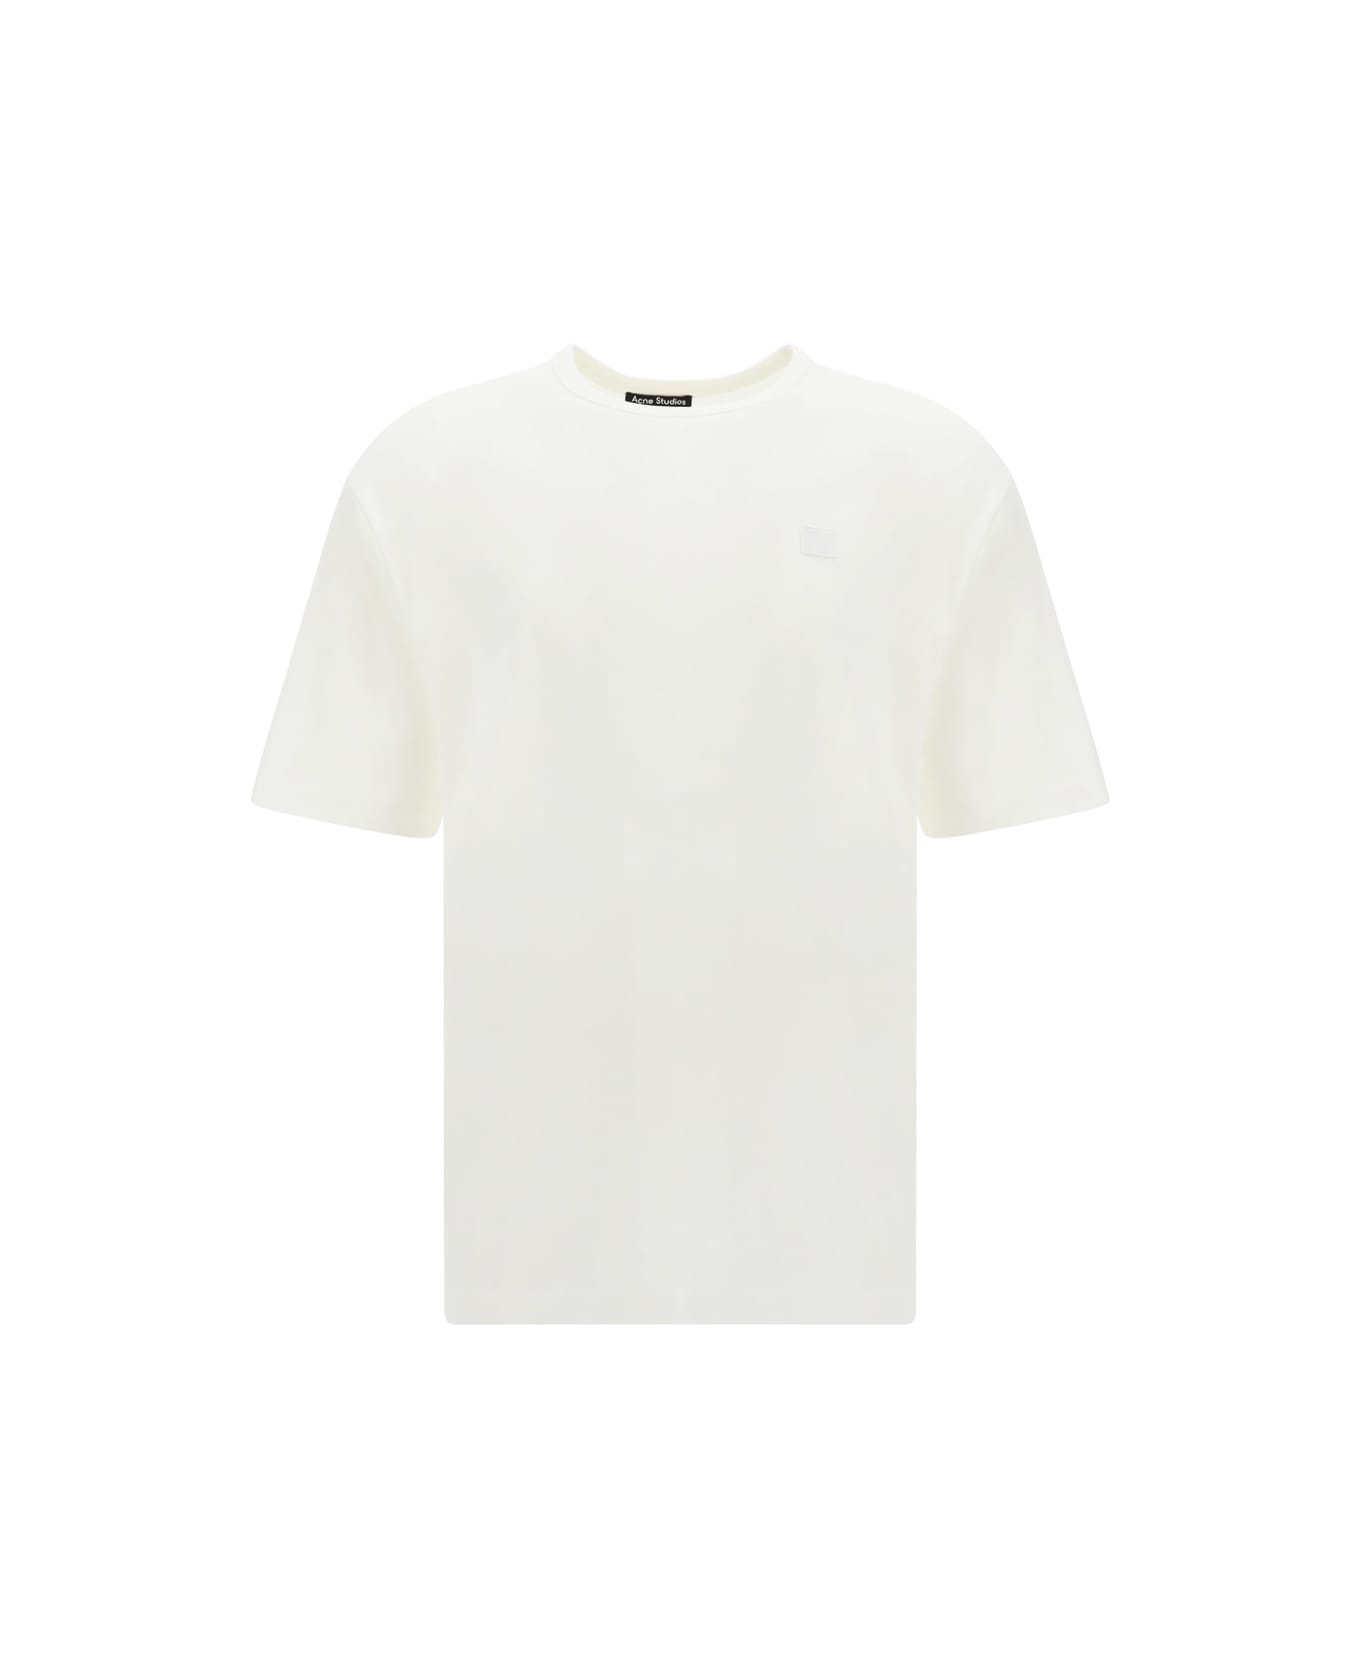 New Studios T-shirt - White